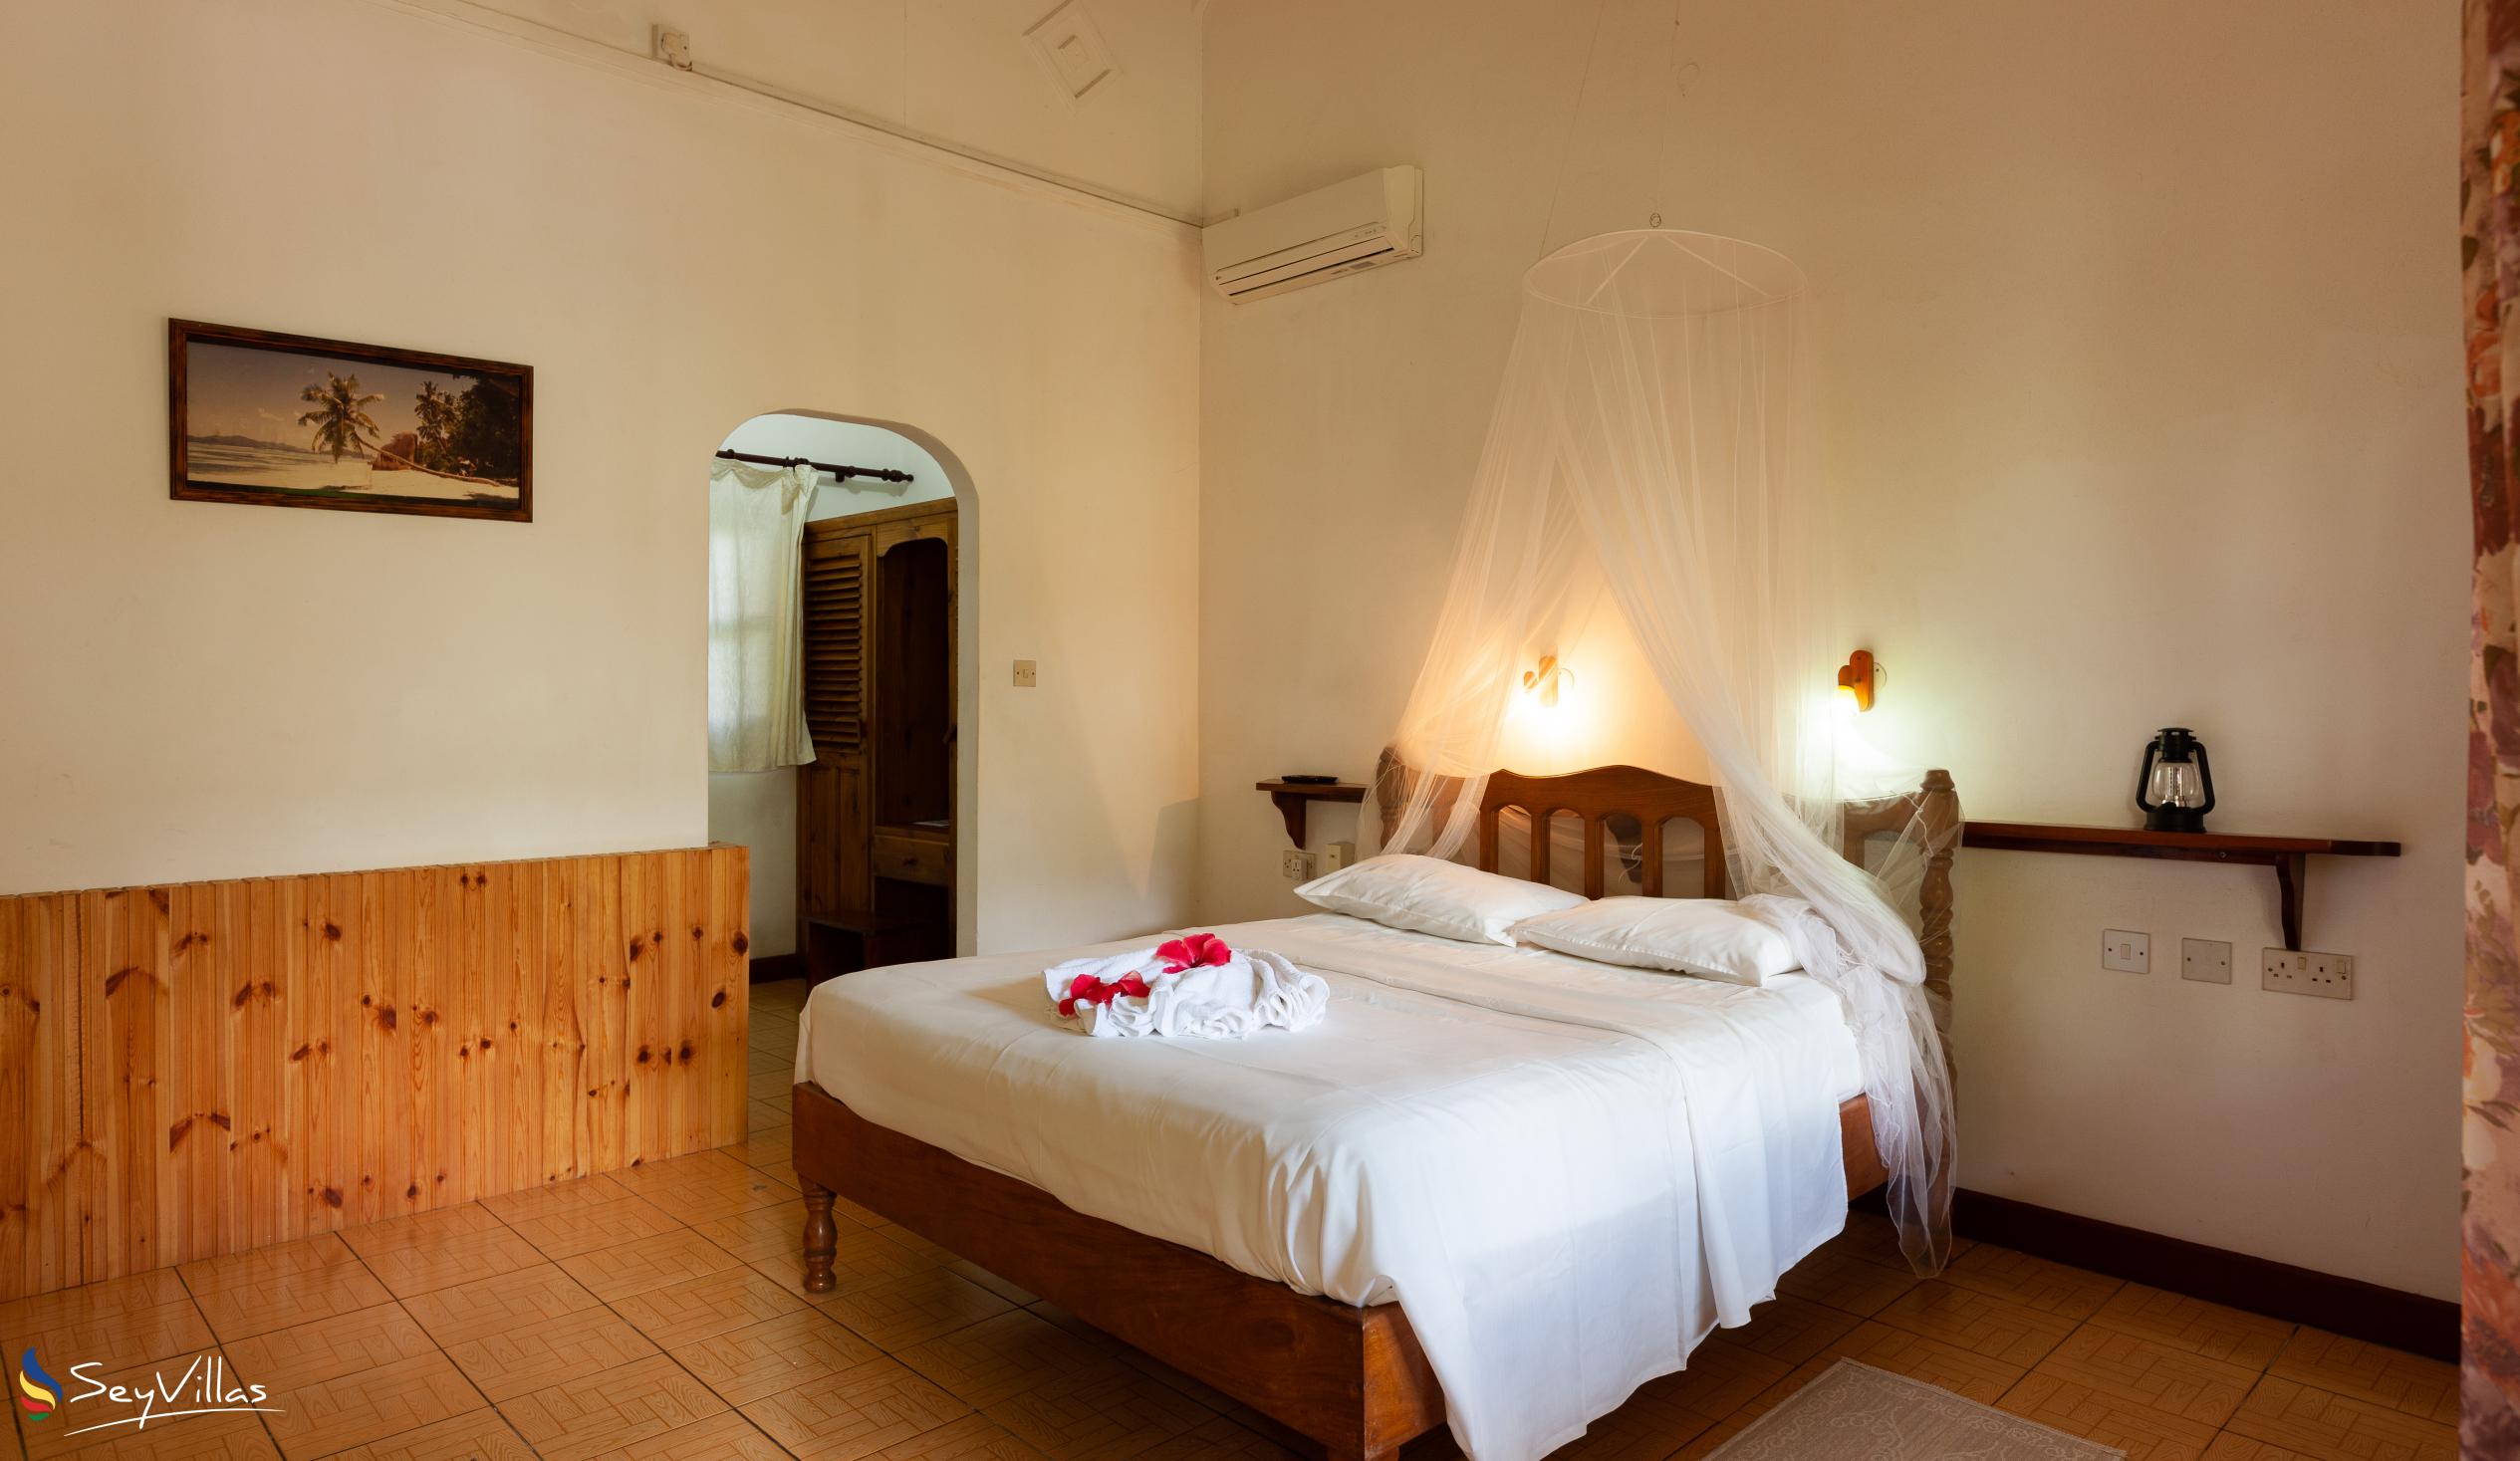 Photo 58: Bernique Guesthouse - Standard Room - La Digue (Seychelles)